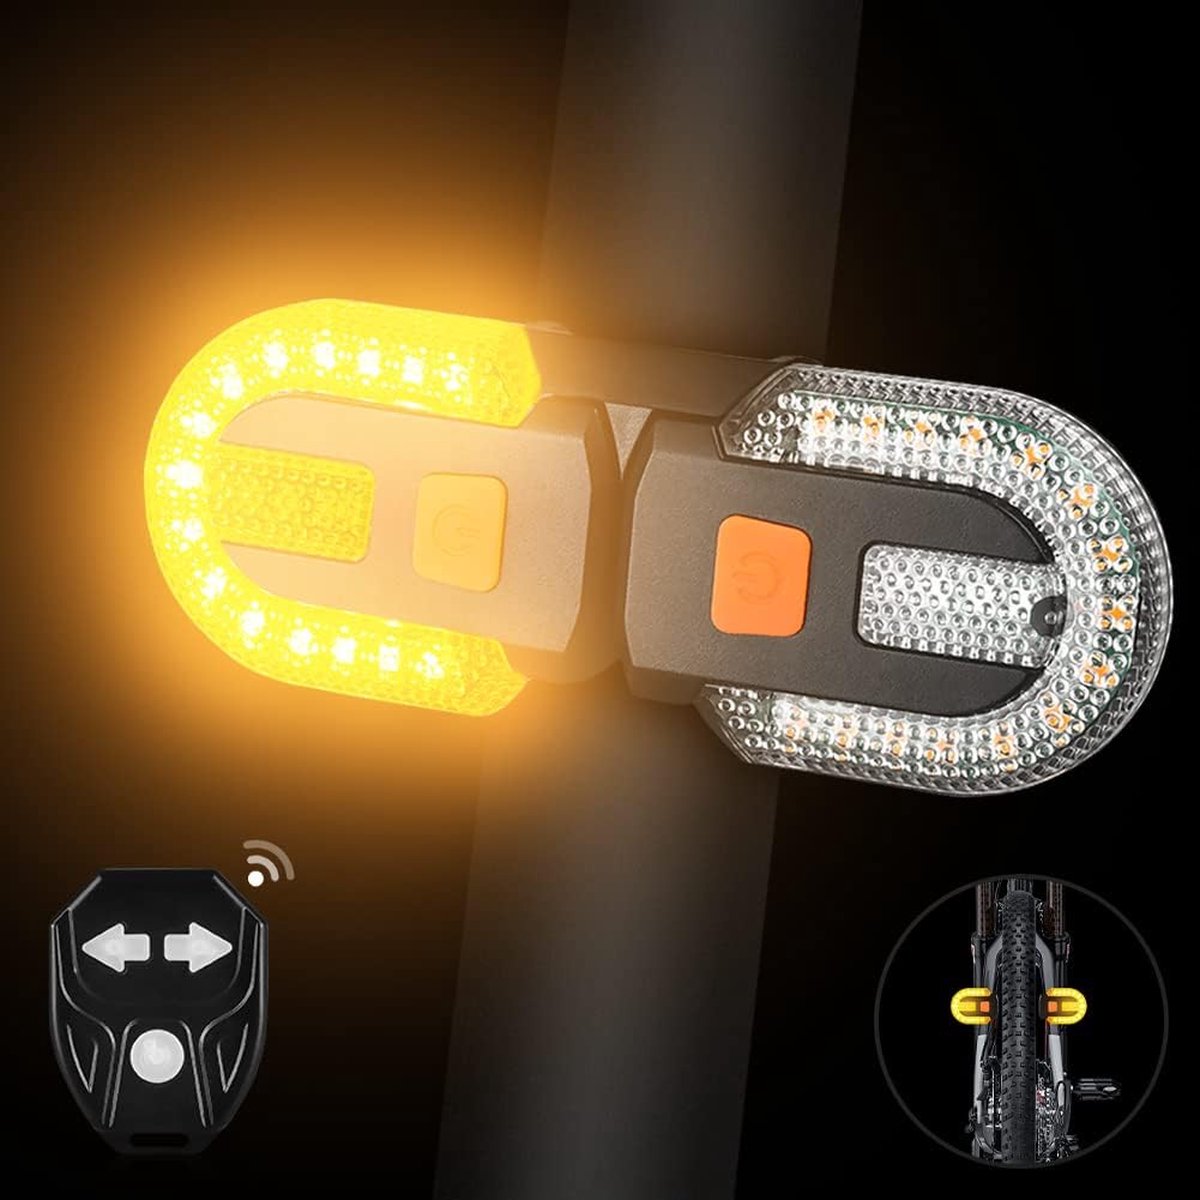 Fiets-achterlicht met richtingaanwijzers - verdeelde fietsachterlichten met draadloze afstandsbediening voor fiets, oplaadbaar, 5 veiligheidsmodi, stroboscooplichten